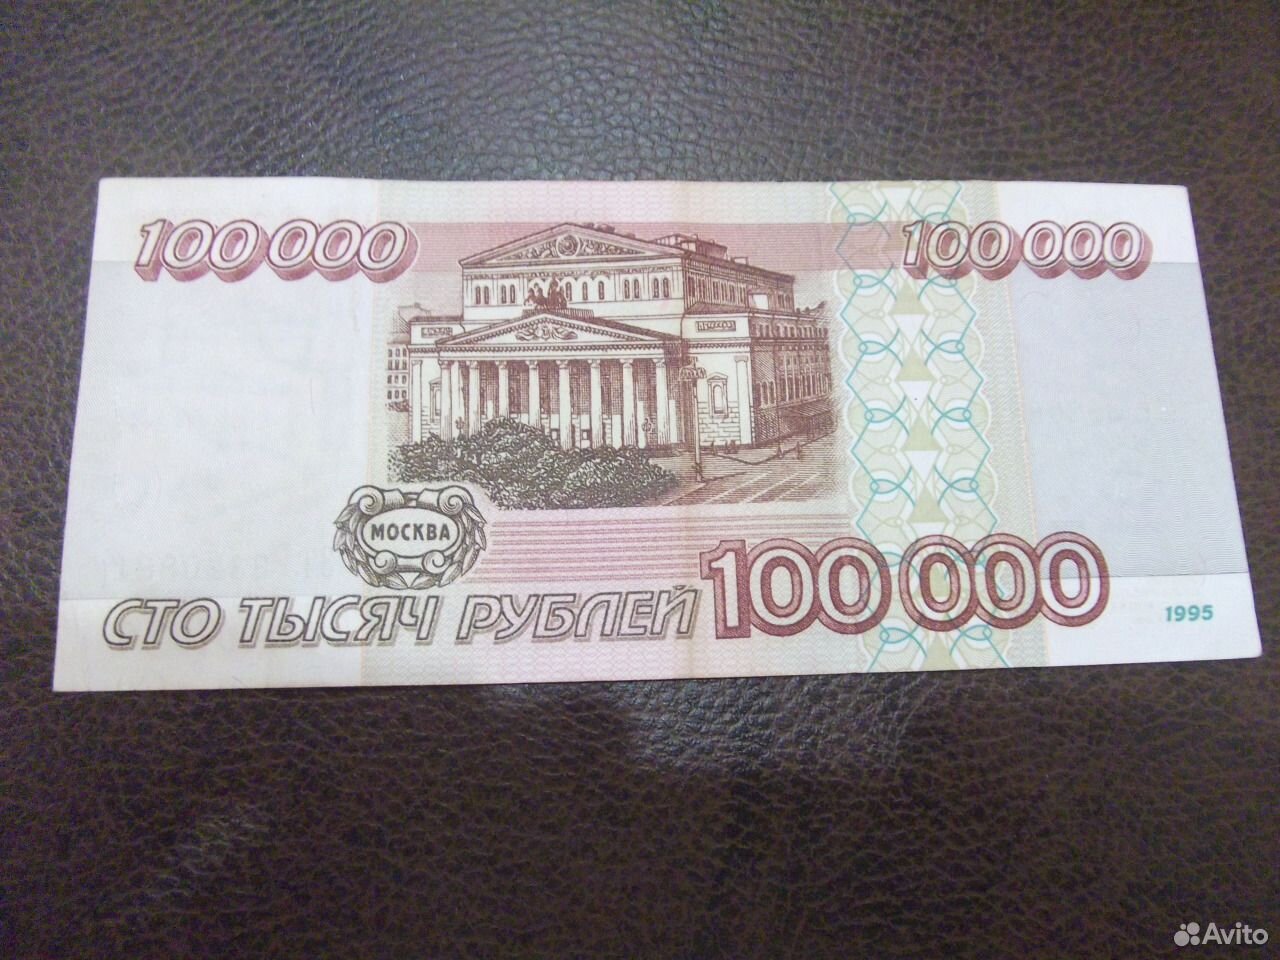 10 тыс 4 тыс поделиться. Купюры 1000000 рублей 1995 года. Банкнота 1000000 рублей. Купюра 5 миллионов рублей. Купюра 100 миллионов рублей.